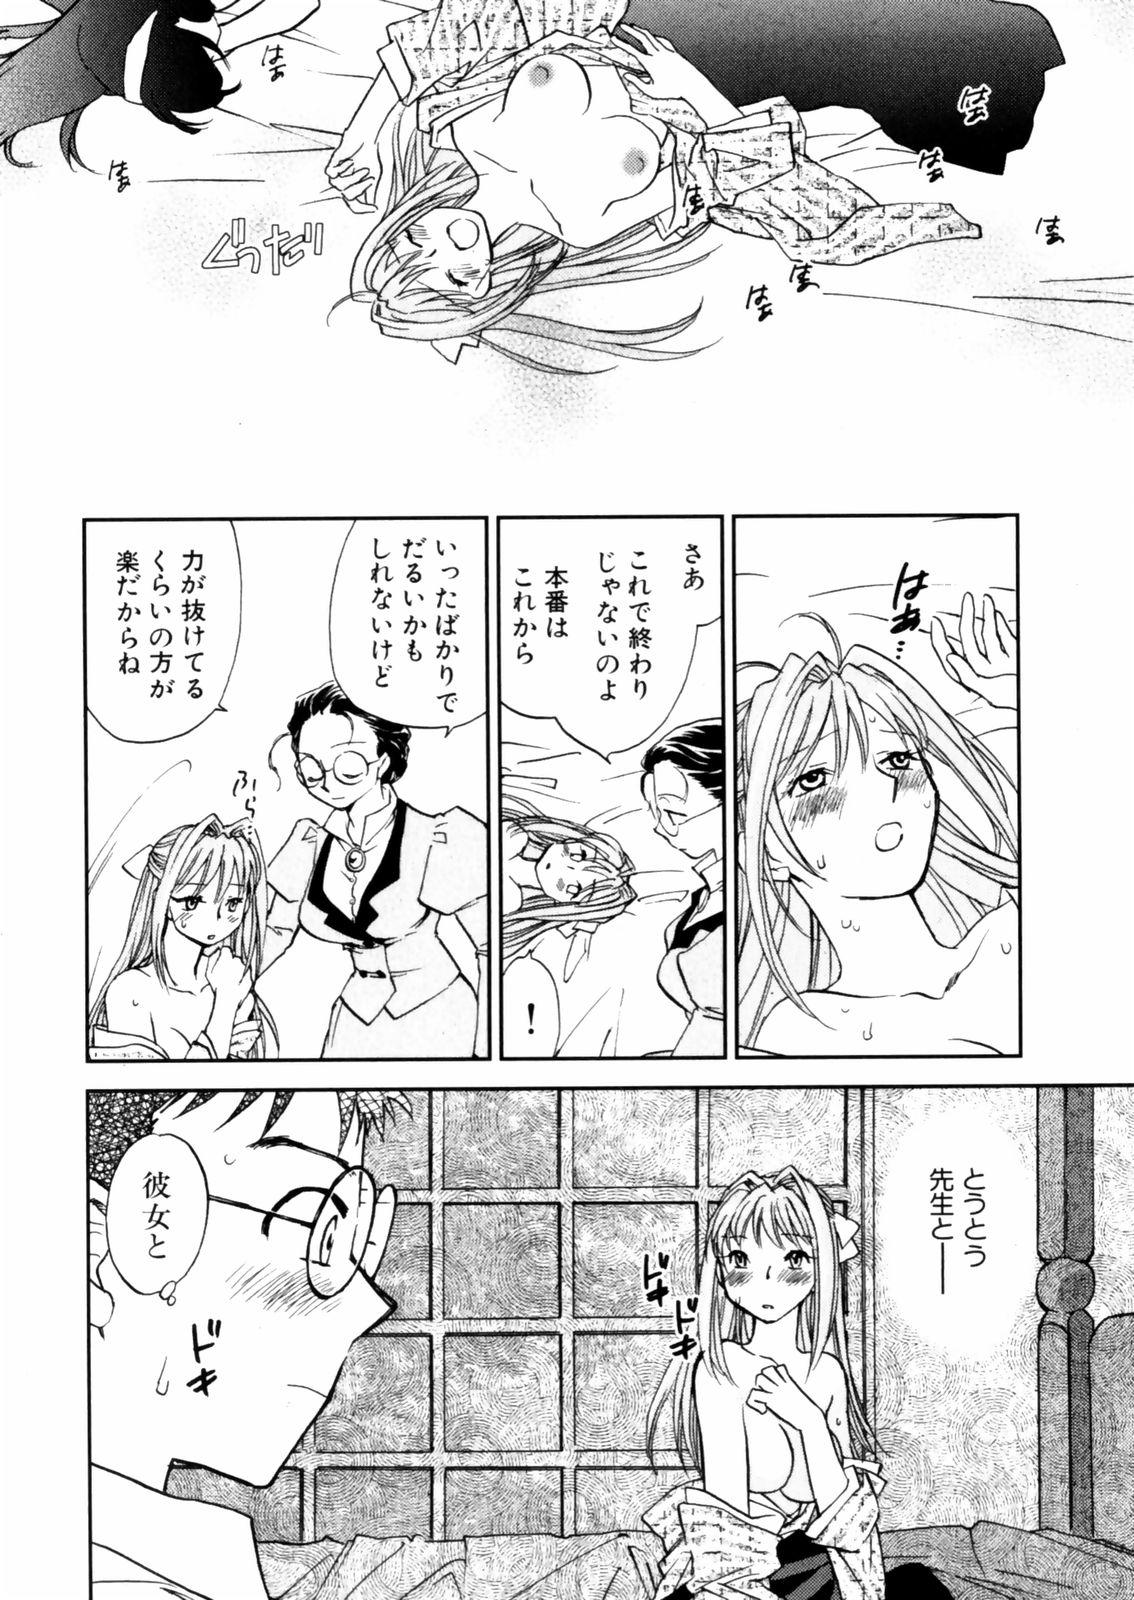 [Okano Ahiru] Hanasake ! Otome Juku (Otome Private Tutoring School) Vol.2 15